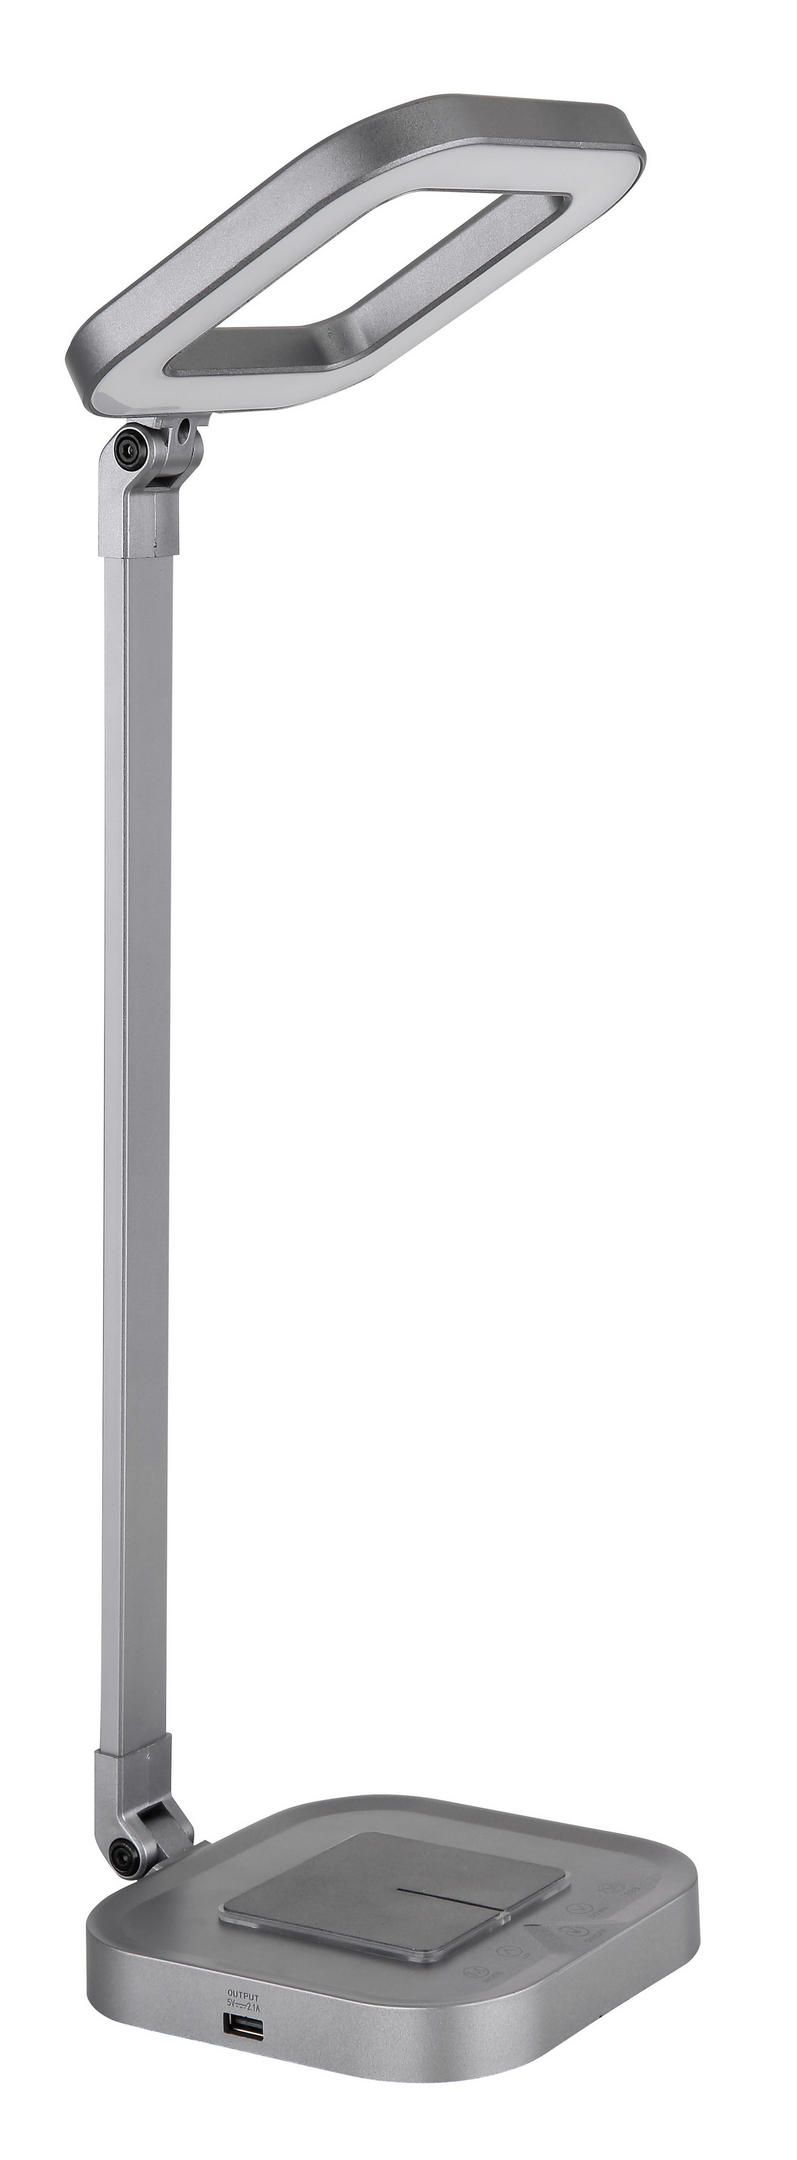 TISCHLEUCHTE  - Weiß/Grau, Basics, Kunststoff/Metall (14,5/14,5/43cm) - Globo